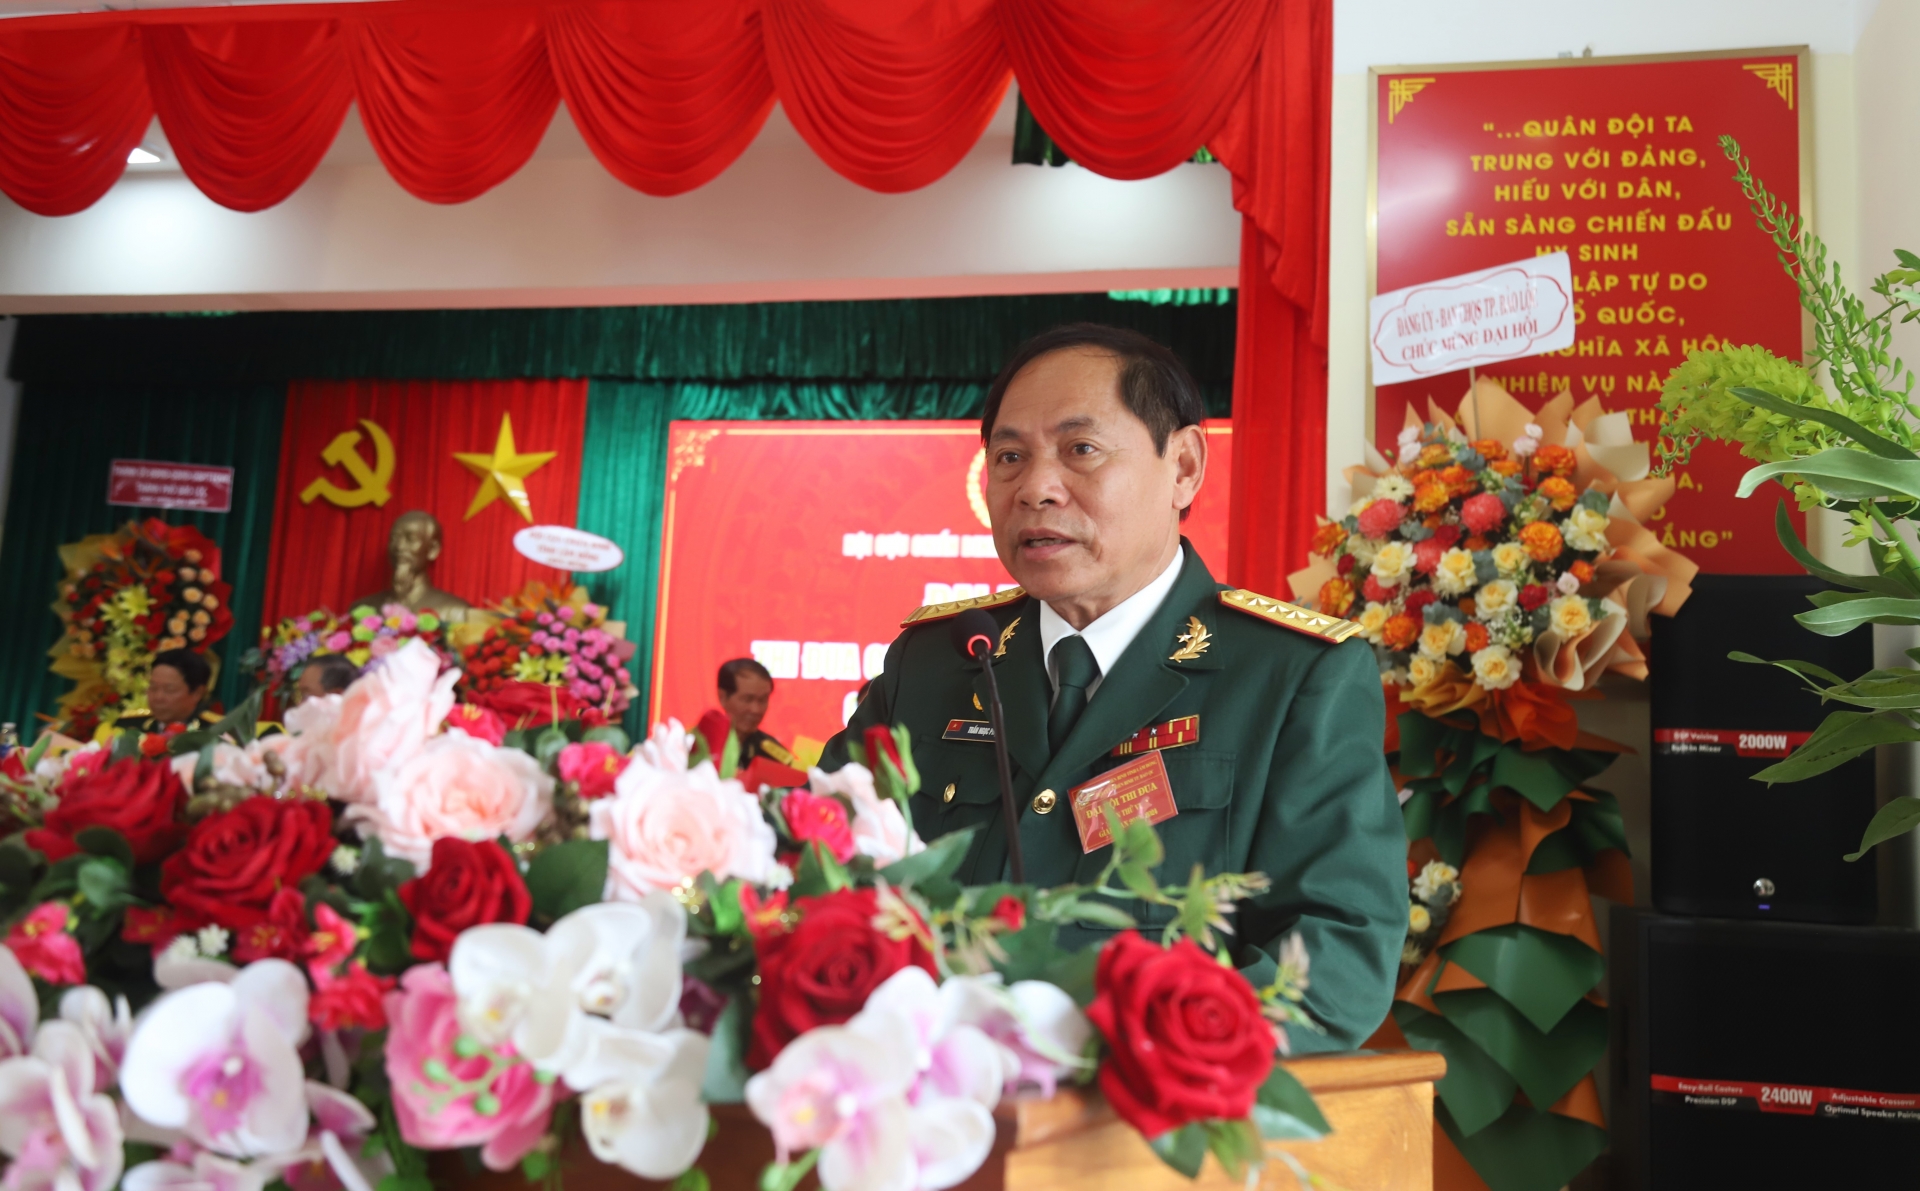 Đồng chí Trần Ngọc Phụng - Chủ tịch Hội CCB TP Bảo Lộc phát biểu khai mạc Đại hội